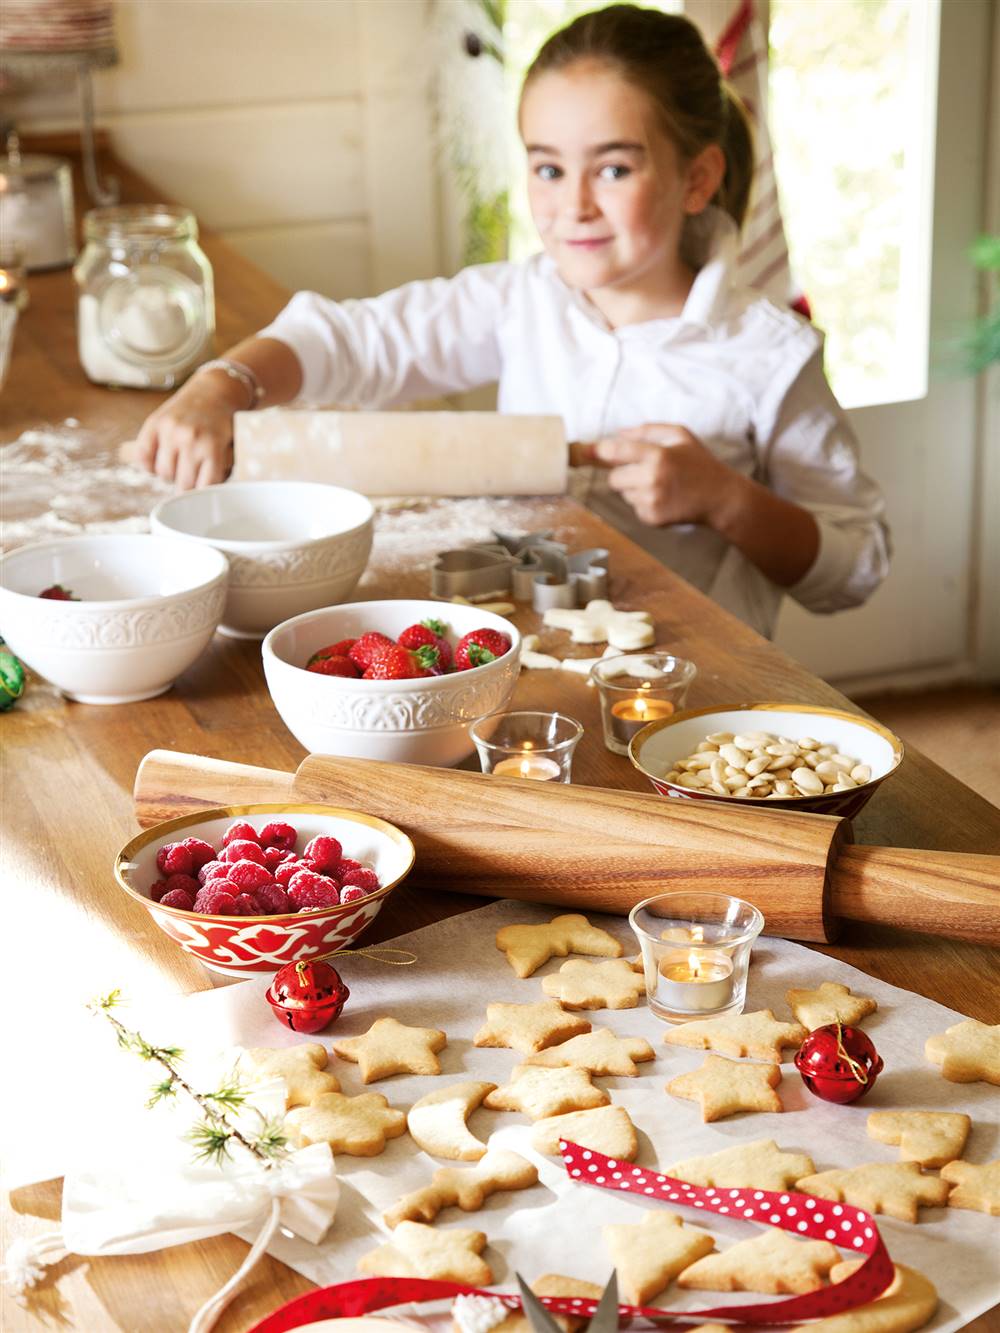 Detalle de niña haciendo galletas en la cocina por Navidad_ 00374296b